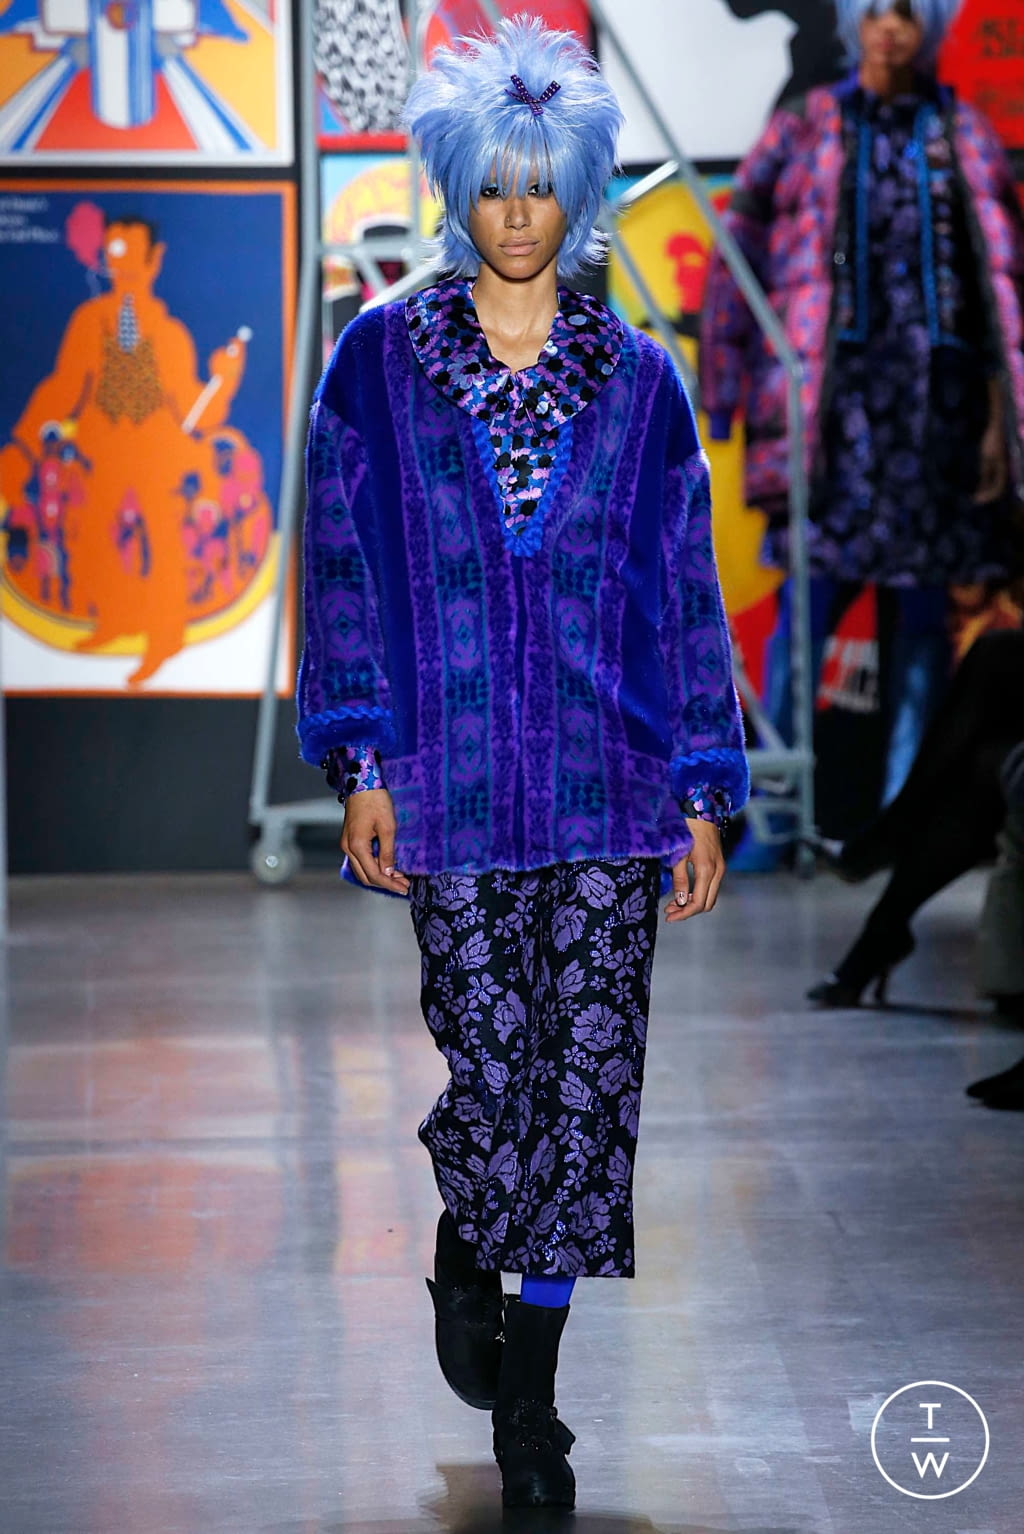 Anna Sui FW19 womenswear #4 - Tagwalk: The Fashion Search Engine